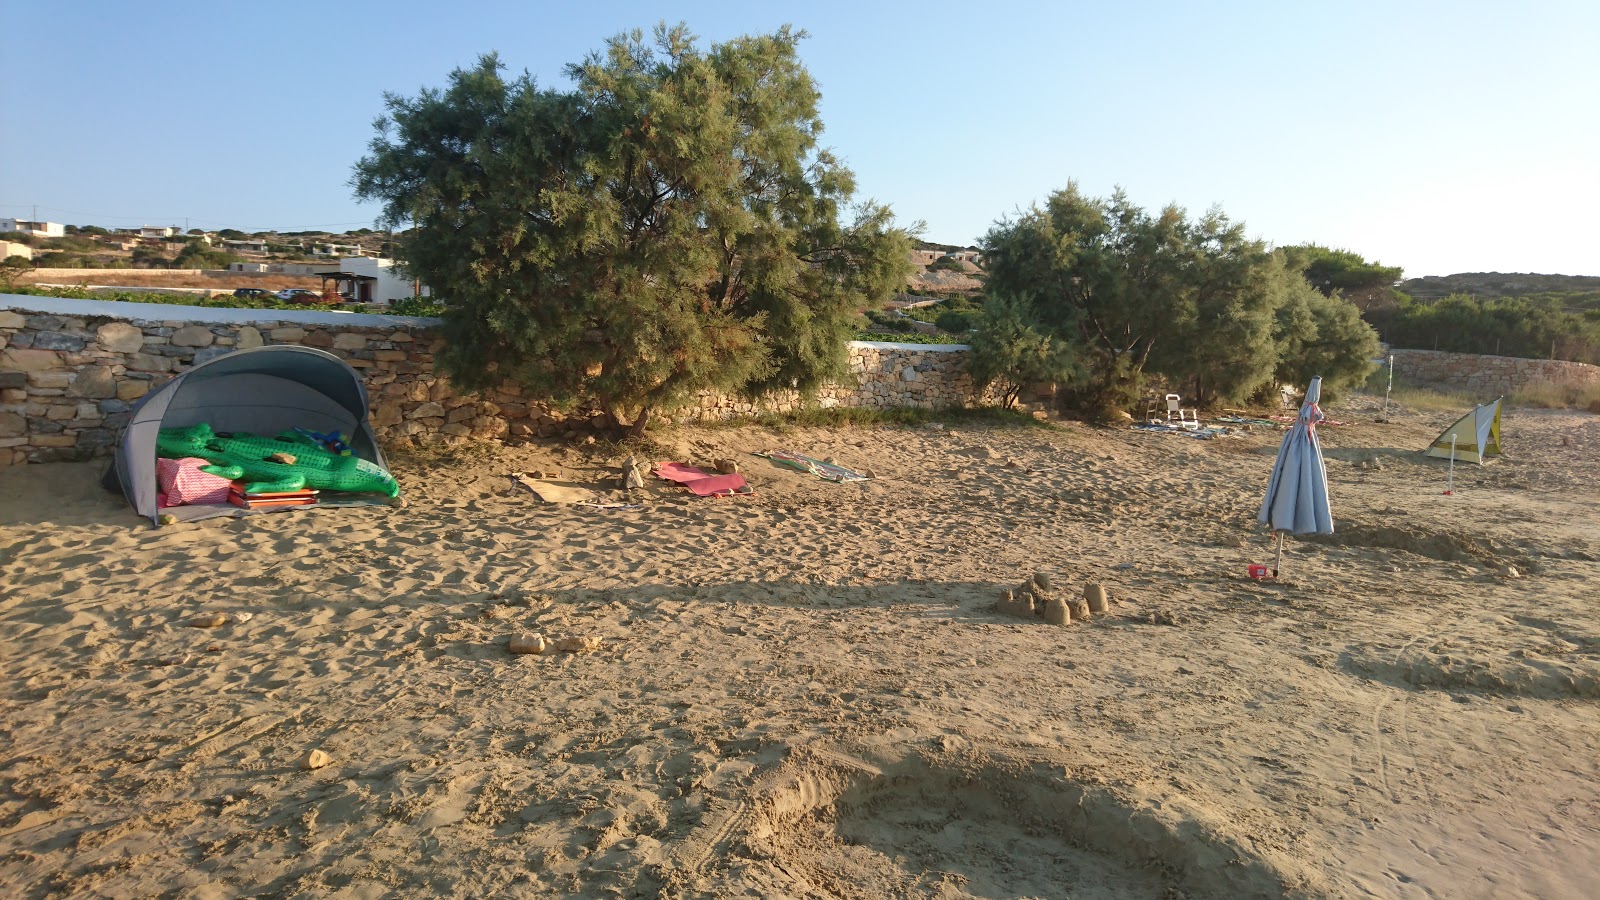 Fotografija Fanos beach nahaja se v naravnem okolju